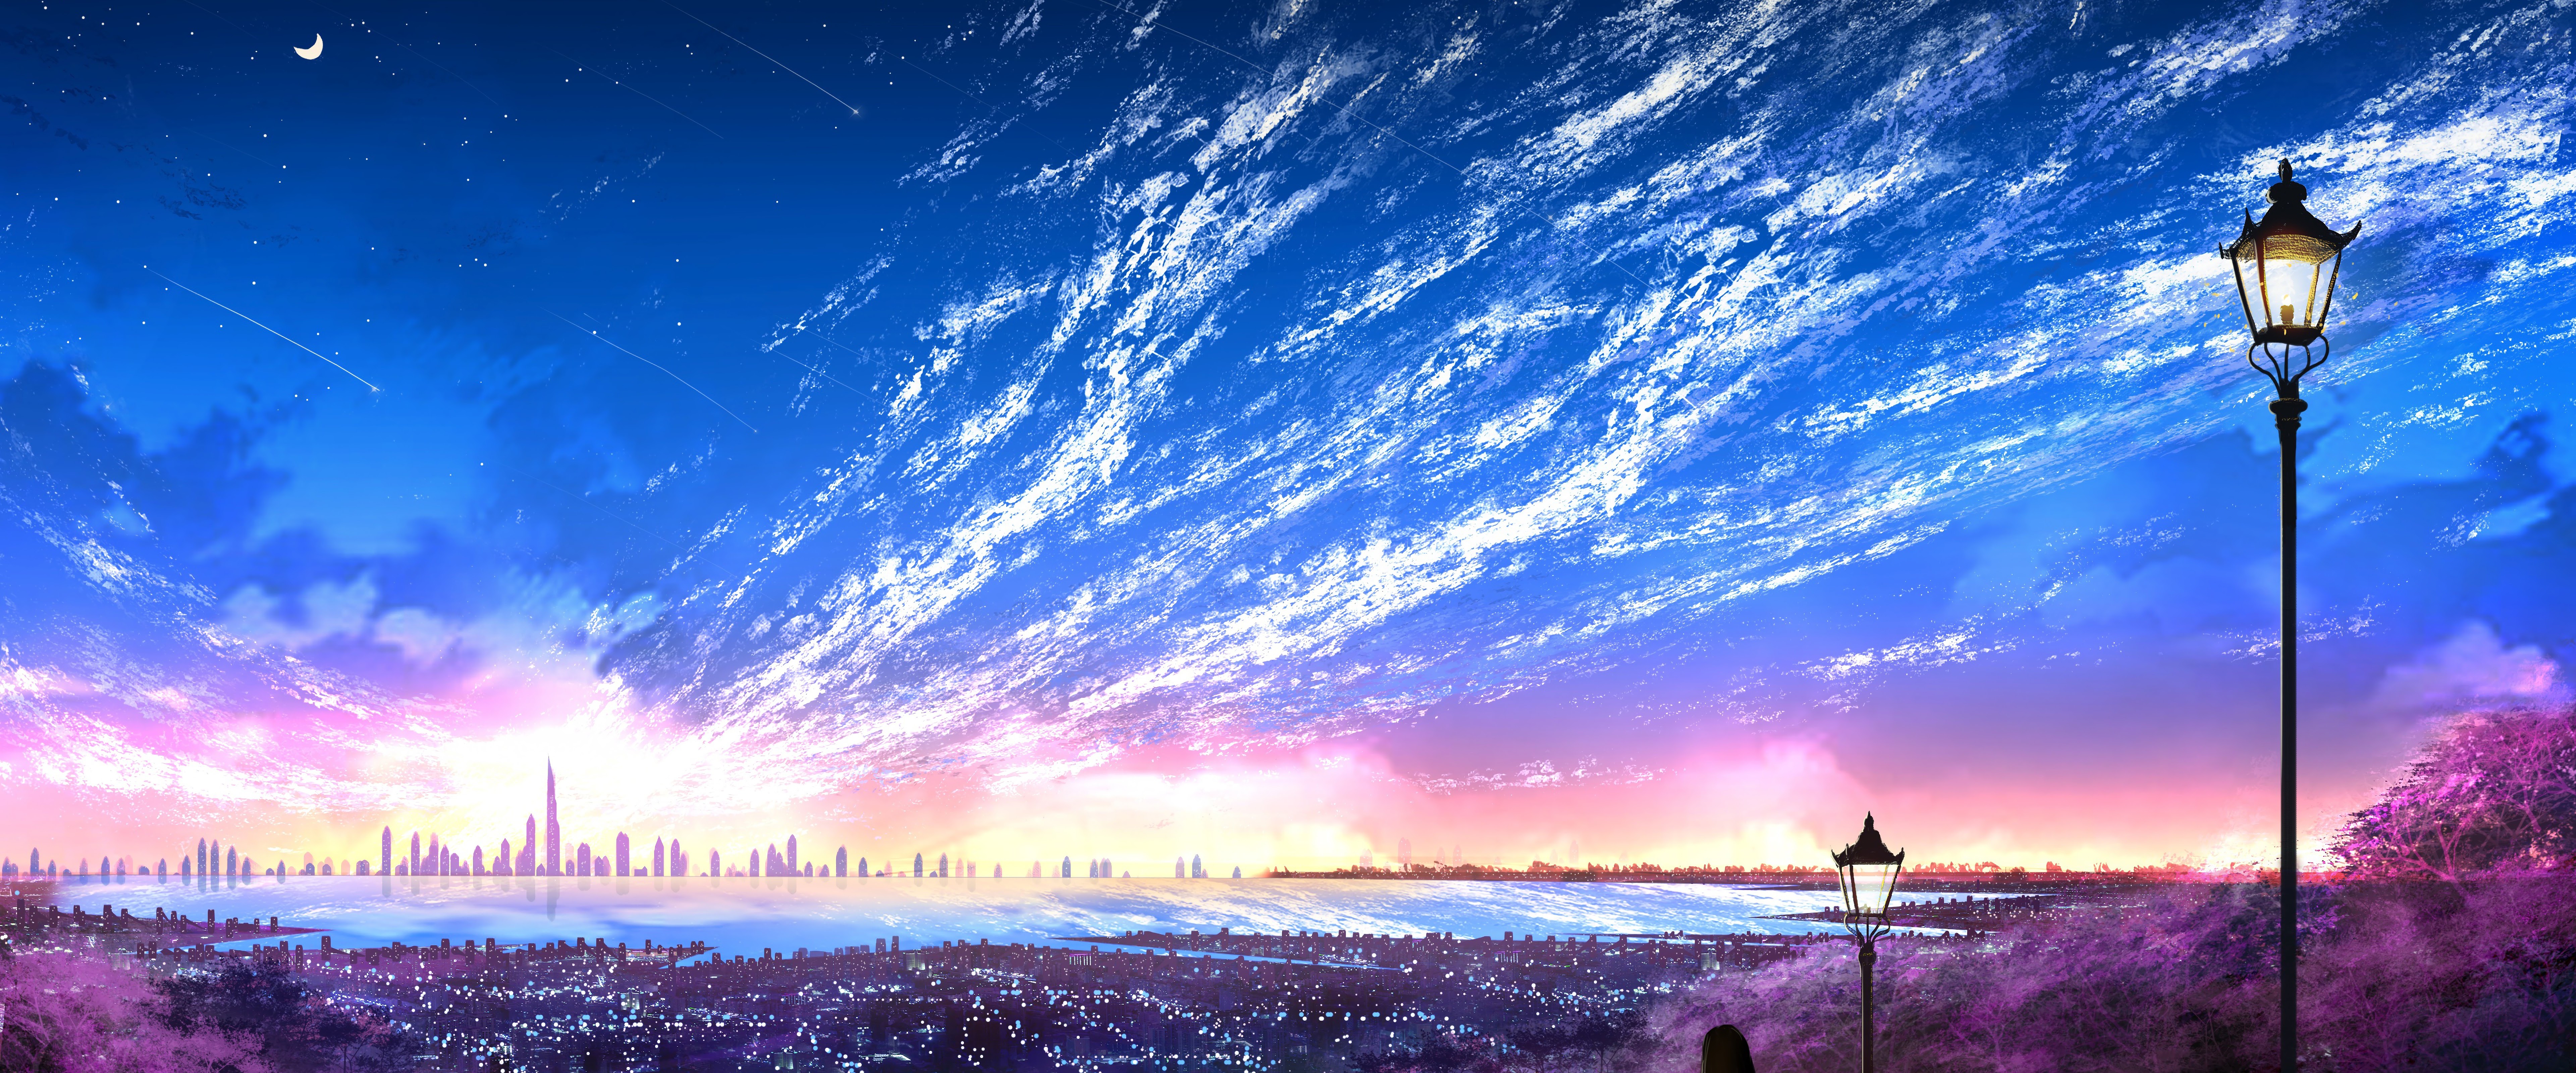 Anime Landscape 4k Ultra HD Wallpaper by そよ風